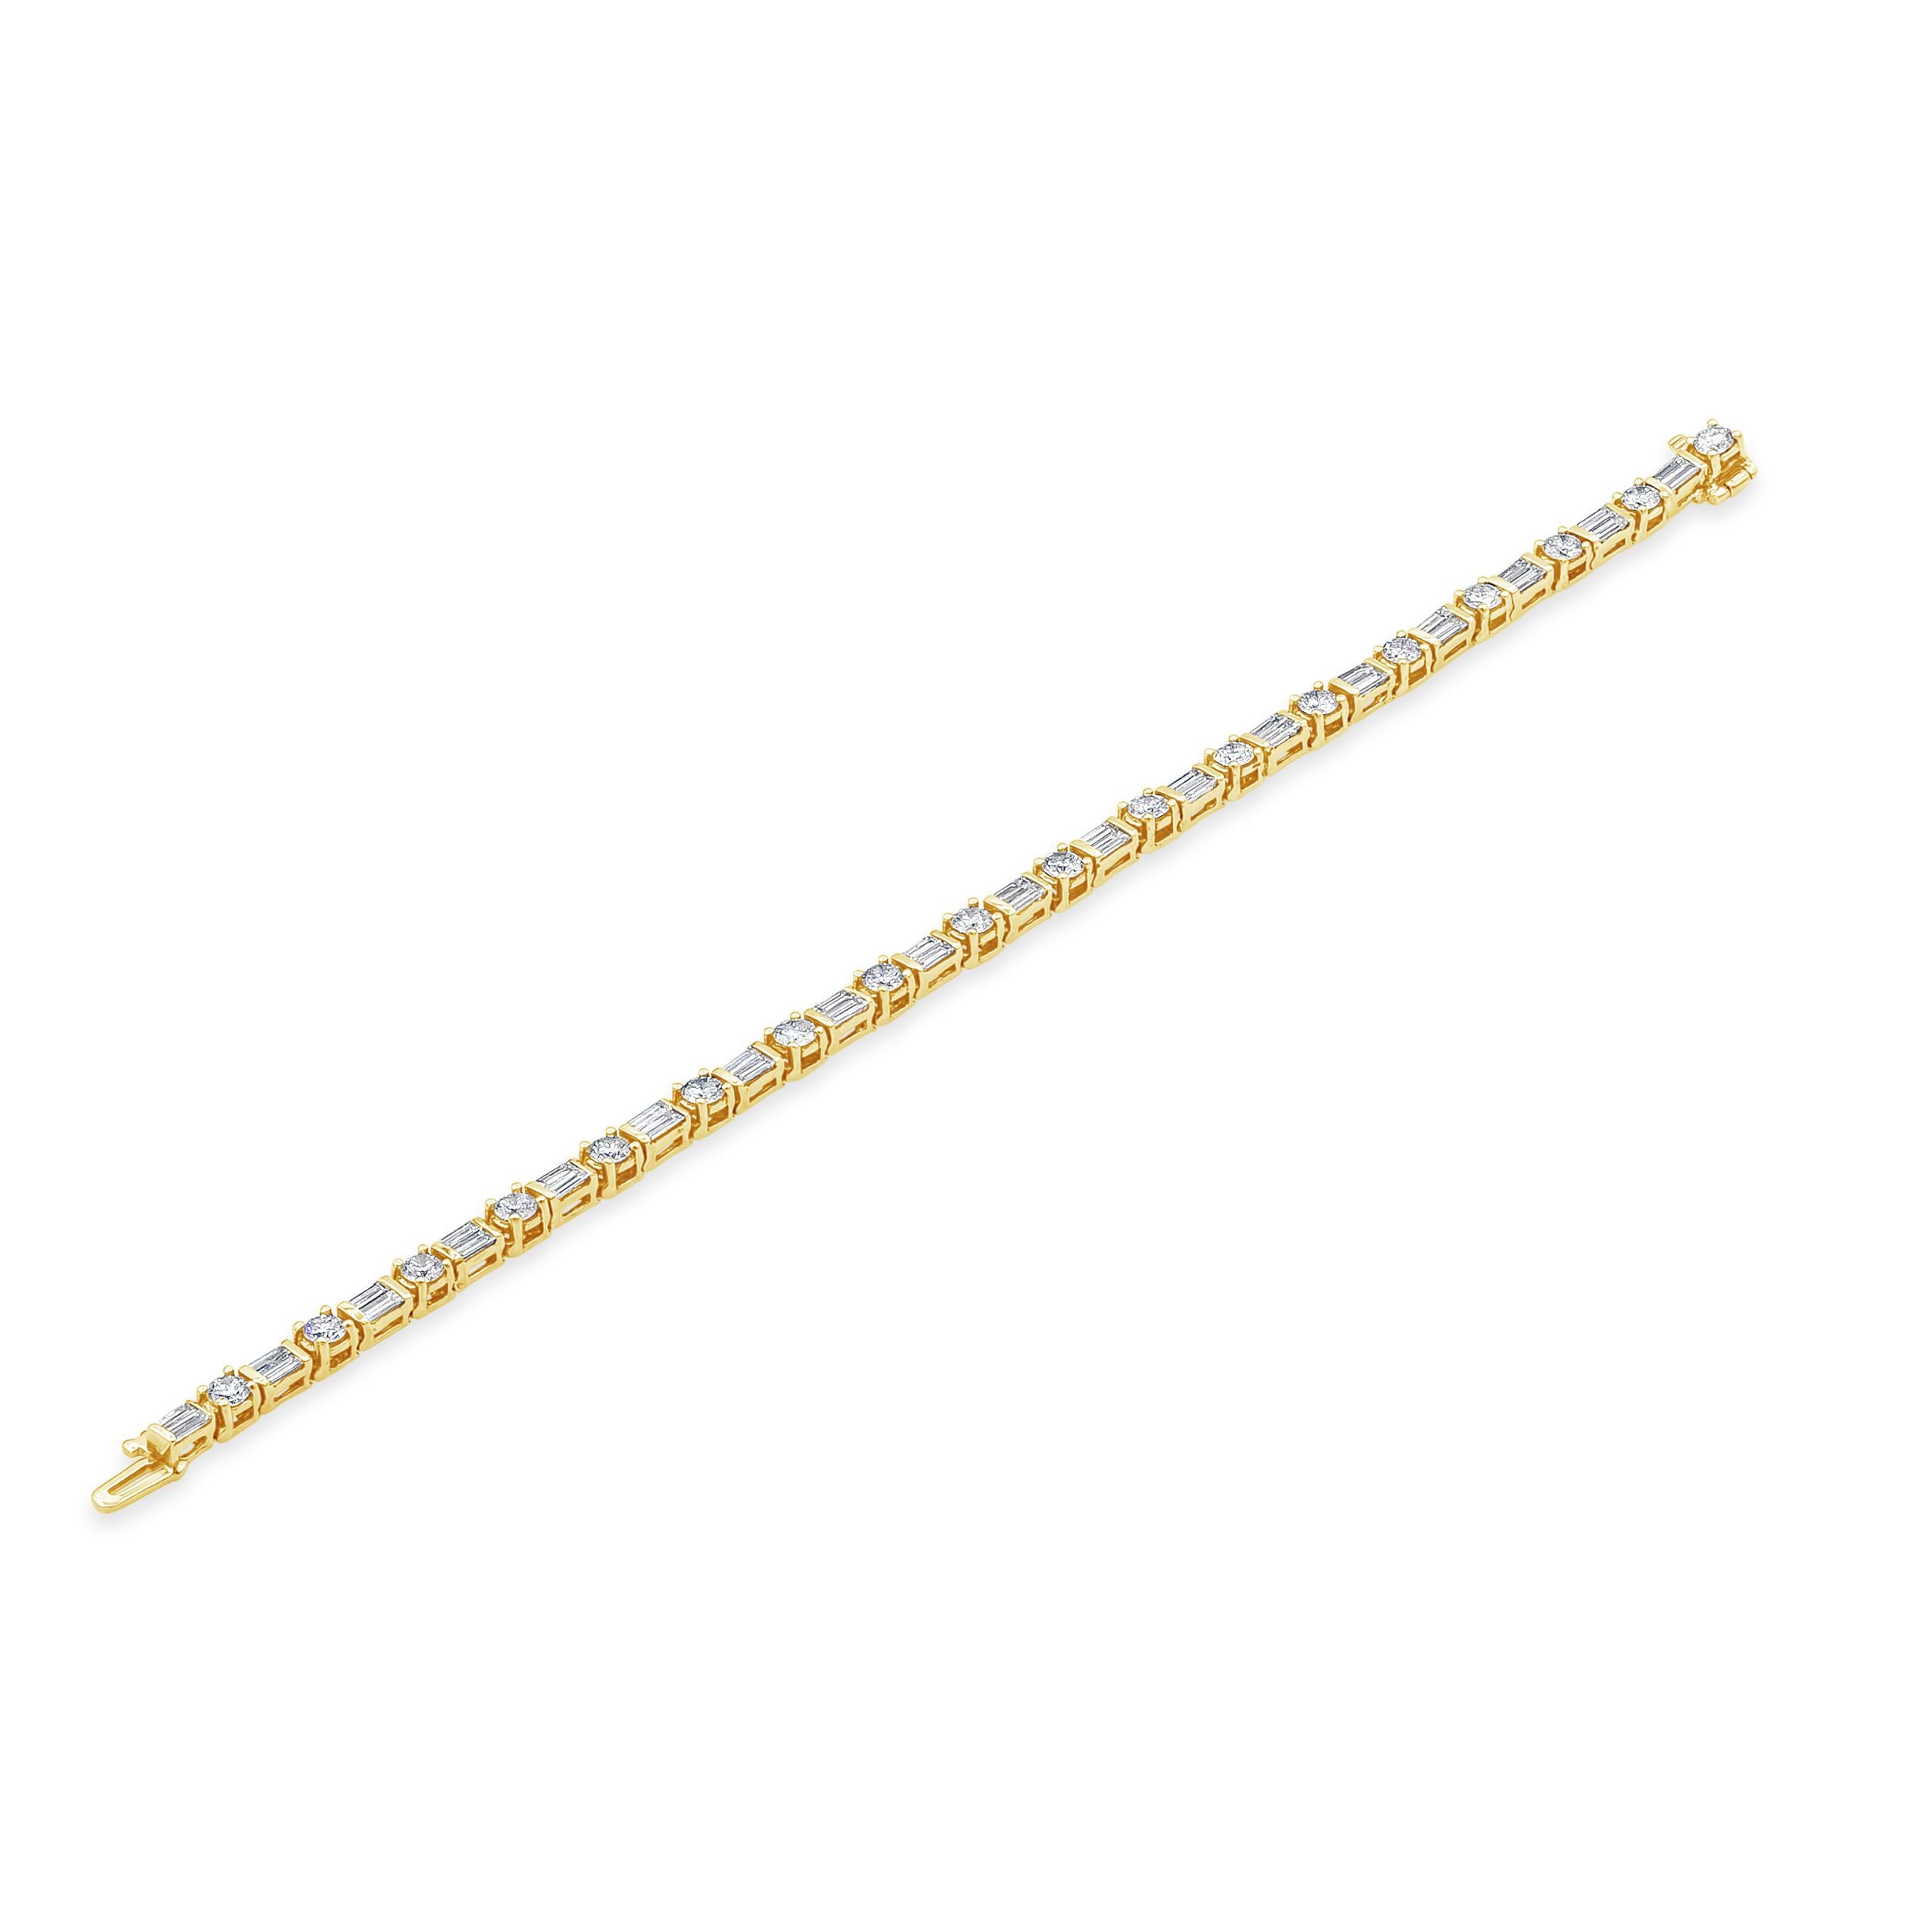 Bei diesem schlichten und farbenfrohen Tennisarmband wechseln sich runde Brillanten mit 2,73 Karat und Diamanten im Baguetteschliff mit 2,43 Karat elegant ab. Bar-Set, hergestellt aus 18K Gelbgold, 7 Zoll Länge. 

Roman Malakov ist ein Unternehmen,